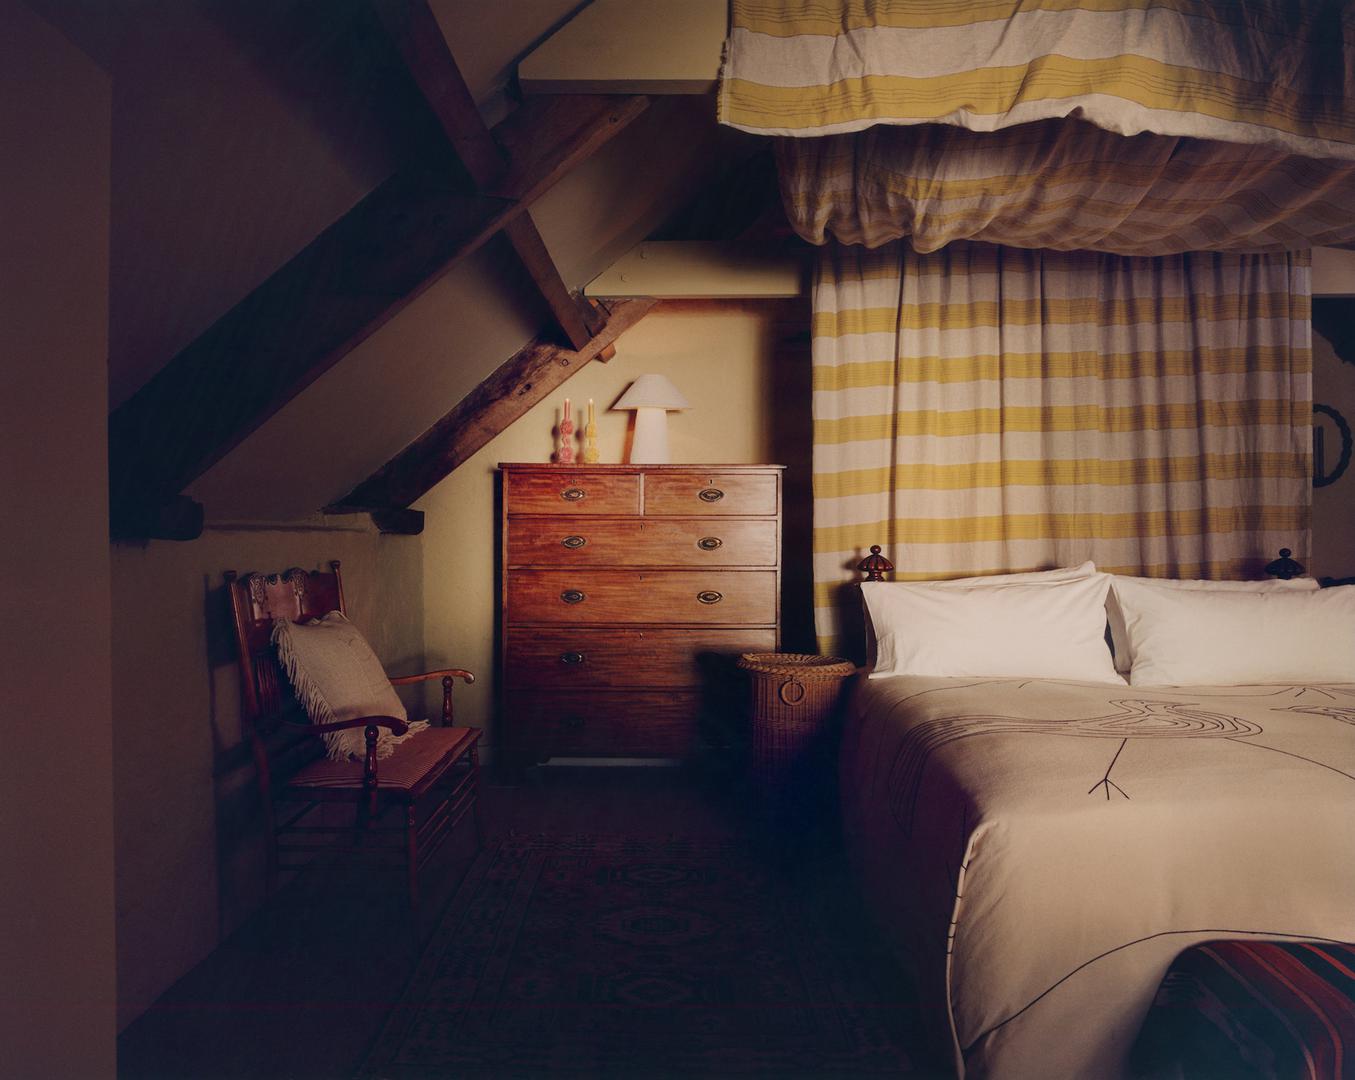 Spavaća soba vlasnika smještena je u potkrovlju pa su morali pažljivo promišljati o iskoristivosti svakog centimetra prostora